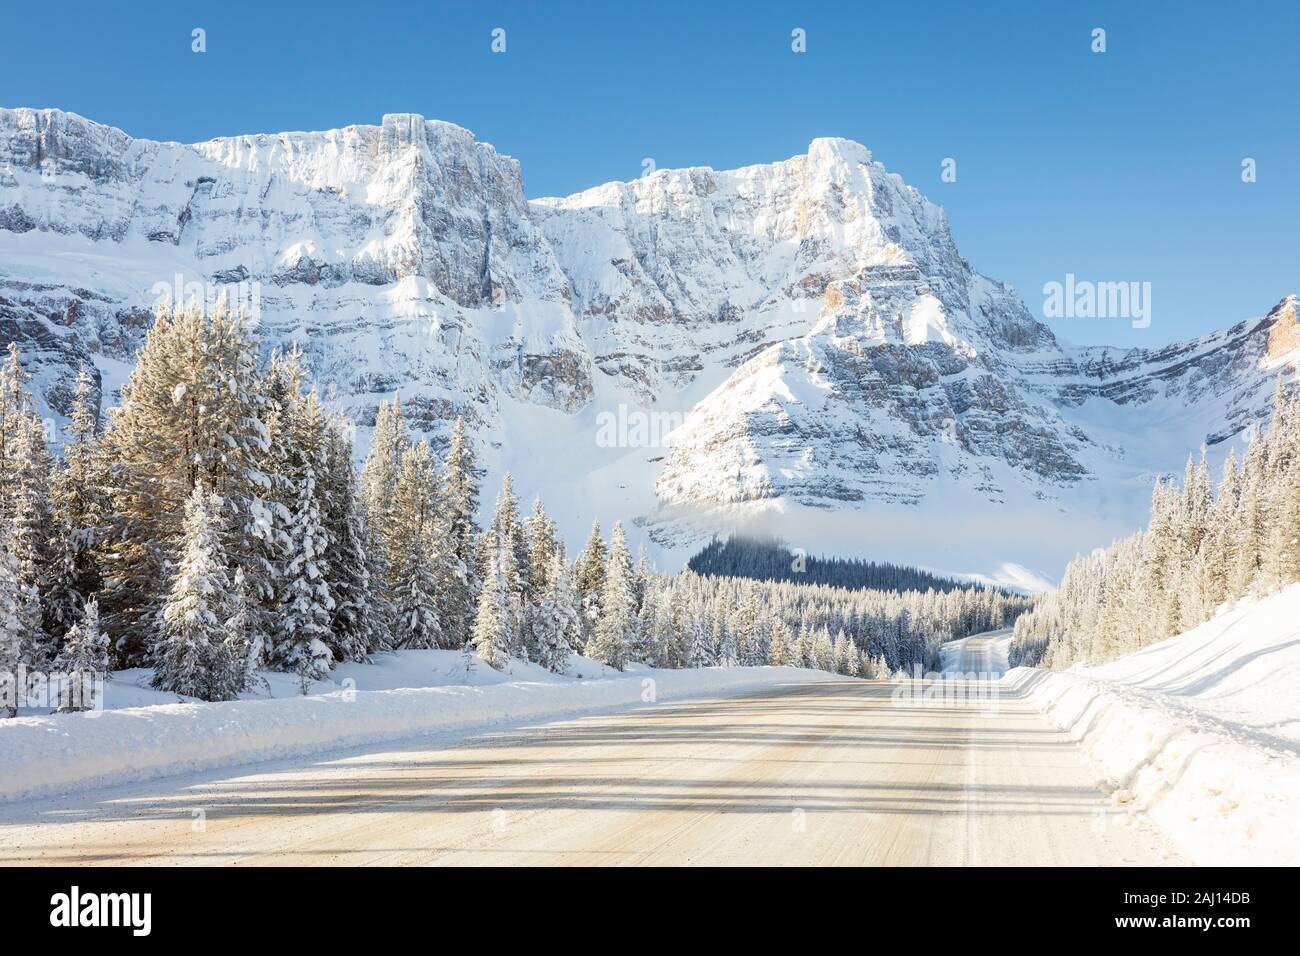 Les chutes de neige fraîche et de la mi-hiver du soleil sur la promenade des Glaciers, l'autoroute 93, Banff National Park, Alberta, Canada. Banque D'Images